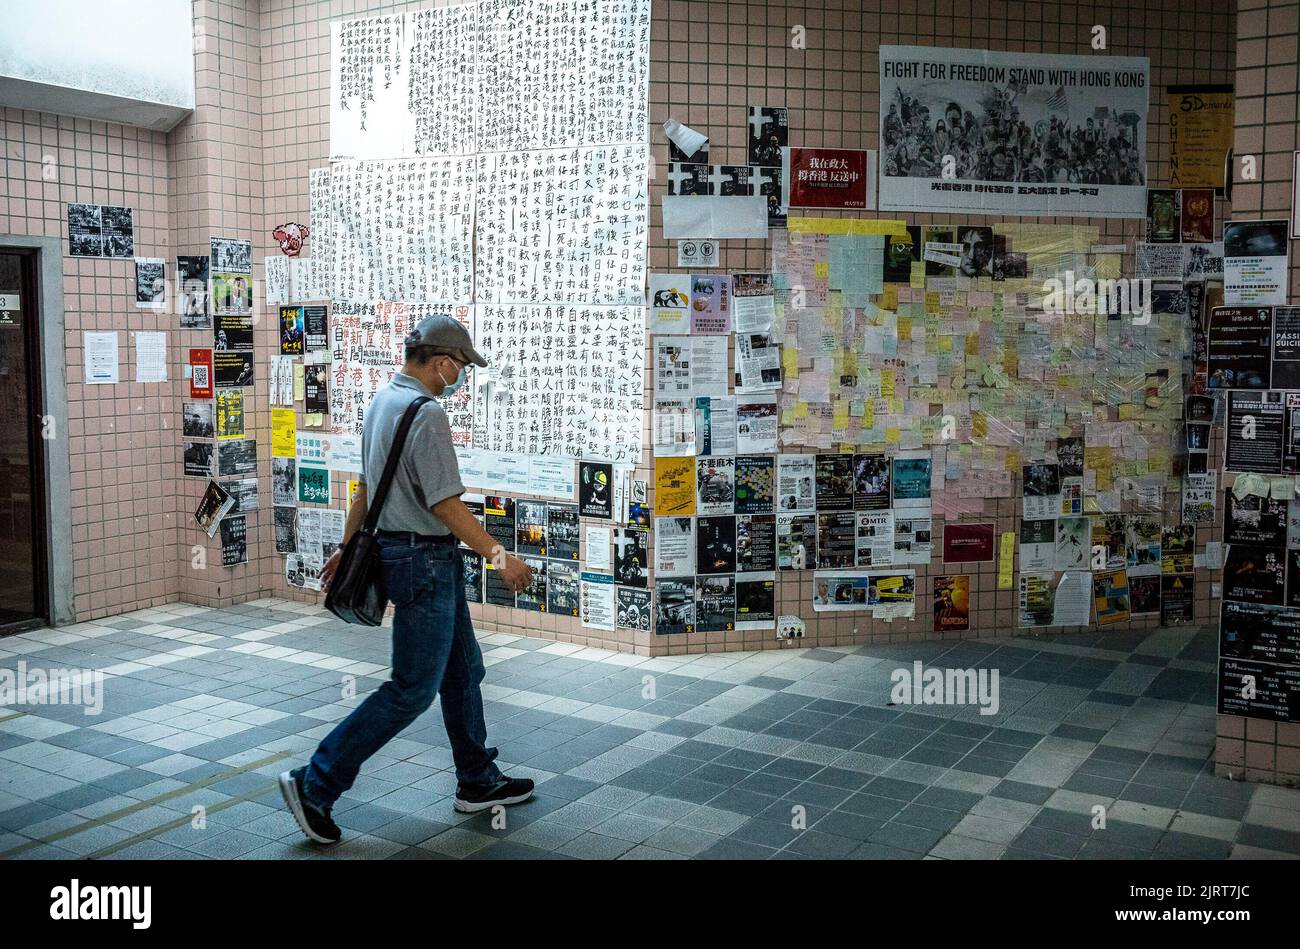 La pared de John Lennon estaba cubierta con carteles y señales que pedían la lucha por la libertad de Hong Kong, Y más recientemente apoyando la defensa de Ucrania contra Rusia establecida en la Universidad de la NCCU en Taipei, Taiwán el 26/08/2022 Activistas pro-libertad que se oponen al gobierno en Beijing han tomado la señal de un muro similar que fue construido en Praga en 1980. Inicialmente, el muro fue concebido como una manera de rendir homenaje a John Lennon después de que fue asesinado. Sin embargo, con el tiempo, se convirtió en una manera de que la juventud de Praga proteste contra el gobierno comunista represivo.Por Wiktor Dabkowski Foto de stock